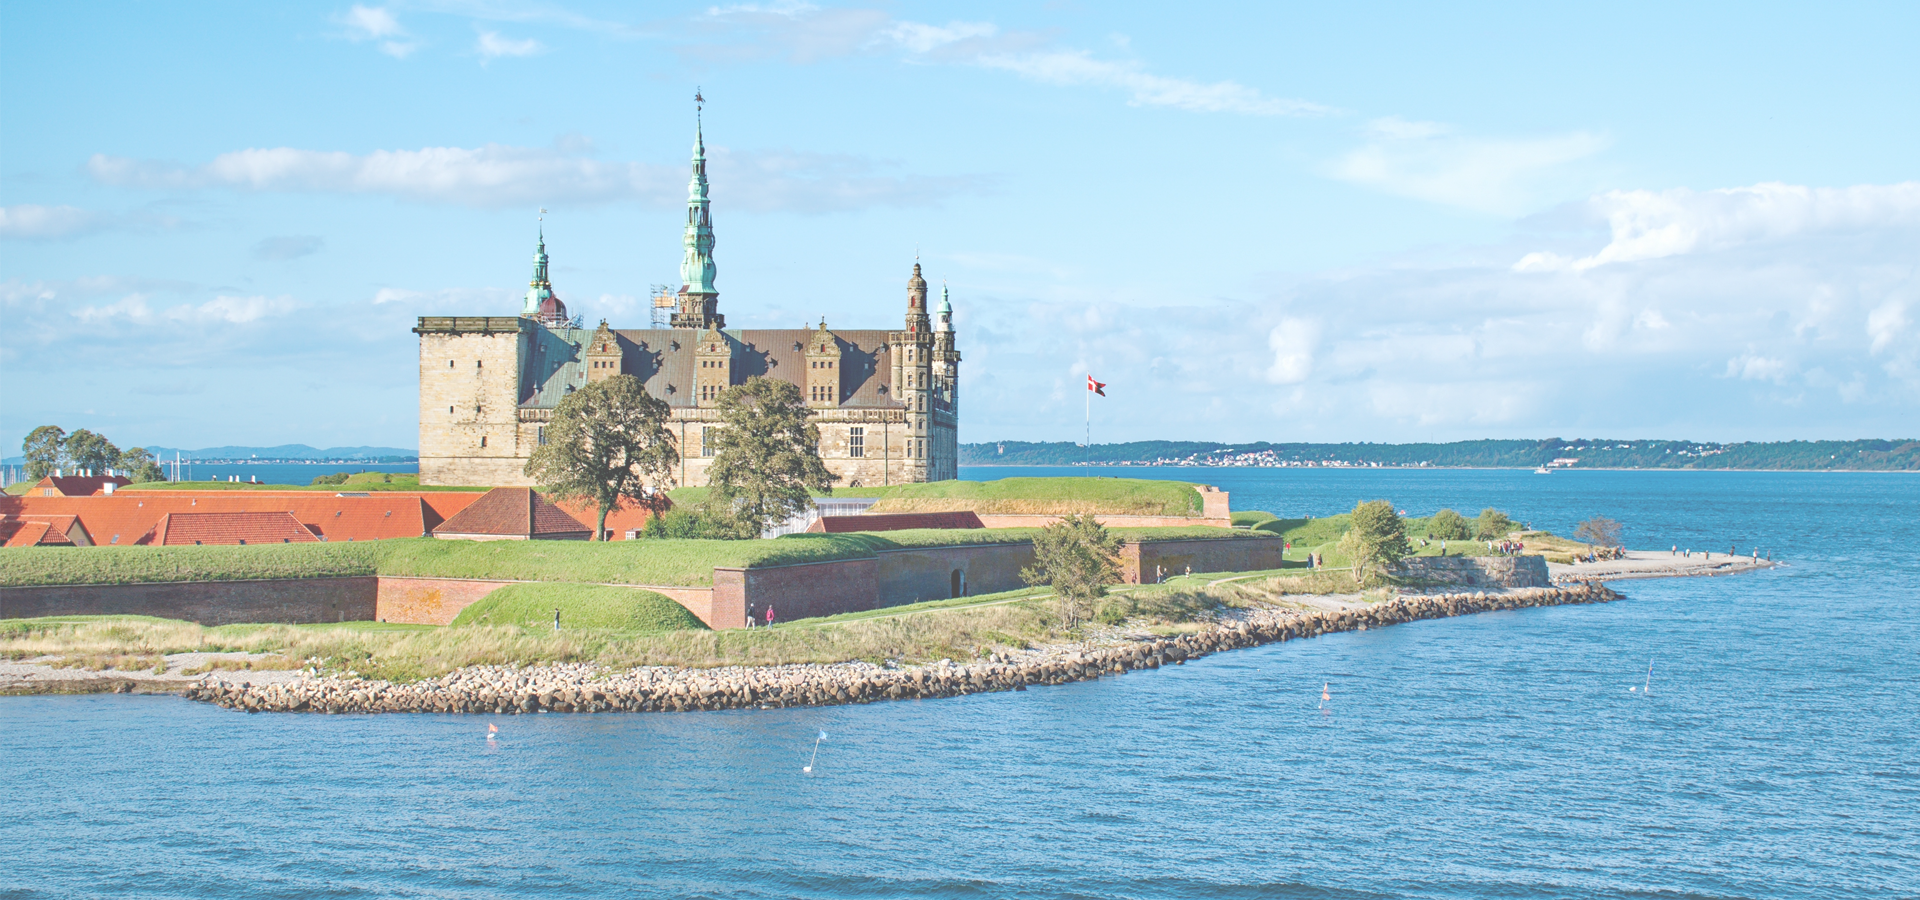 Castle of Kronborg, Elsinore, Denmark